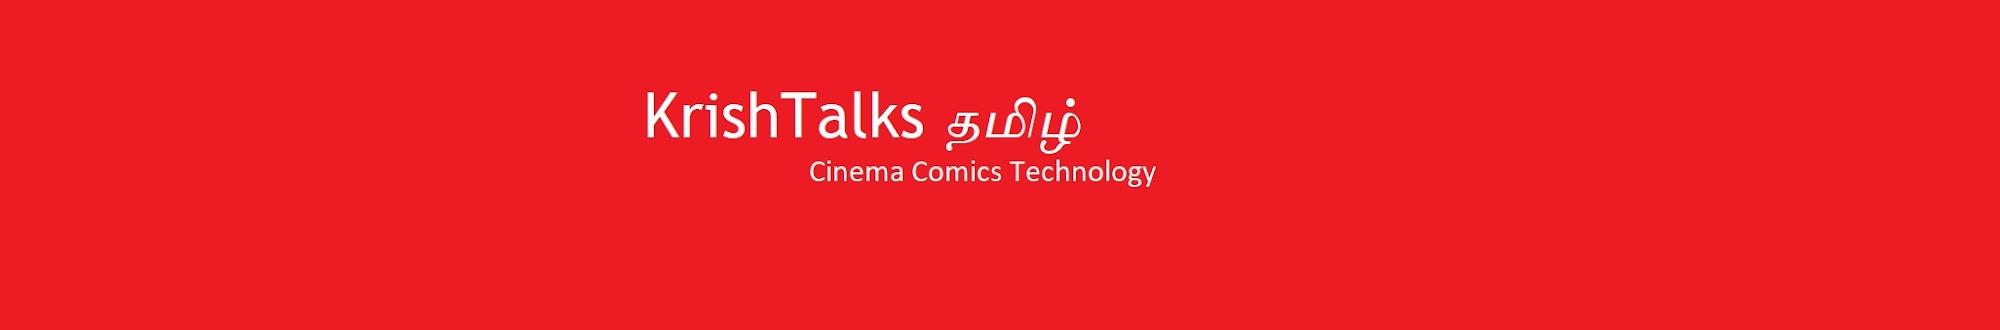 KrishTalks Tamil